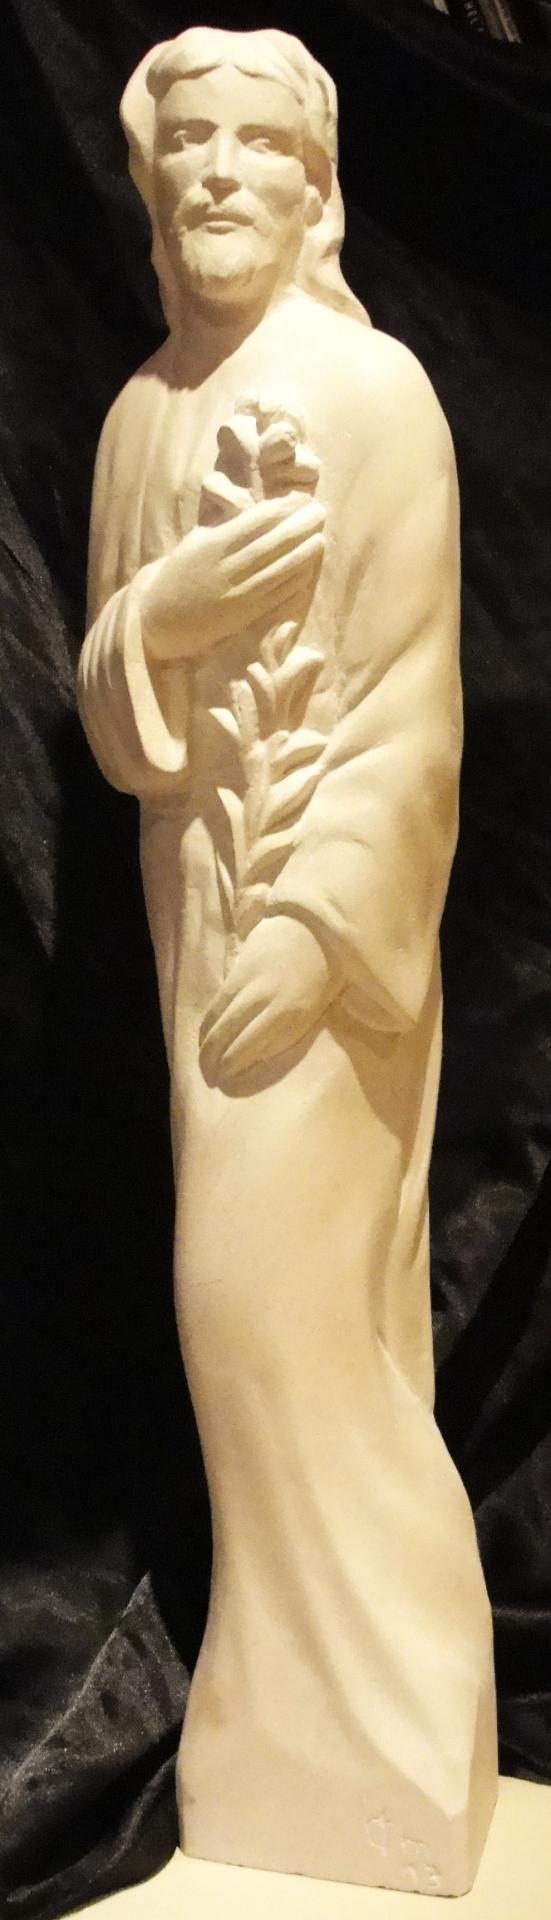 St joseph sculpture sur pierre demi relief 21